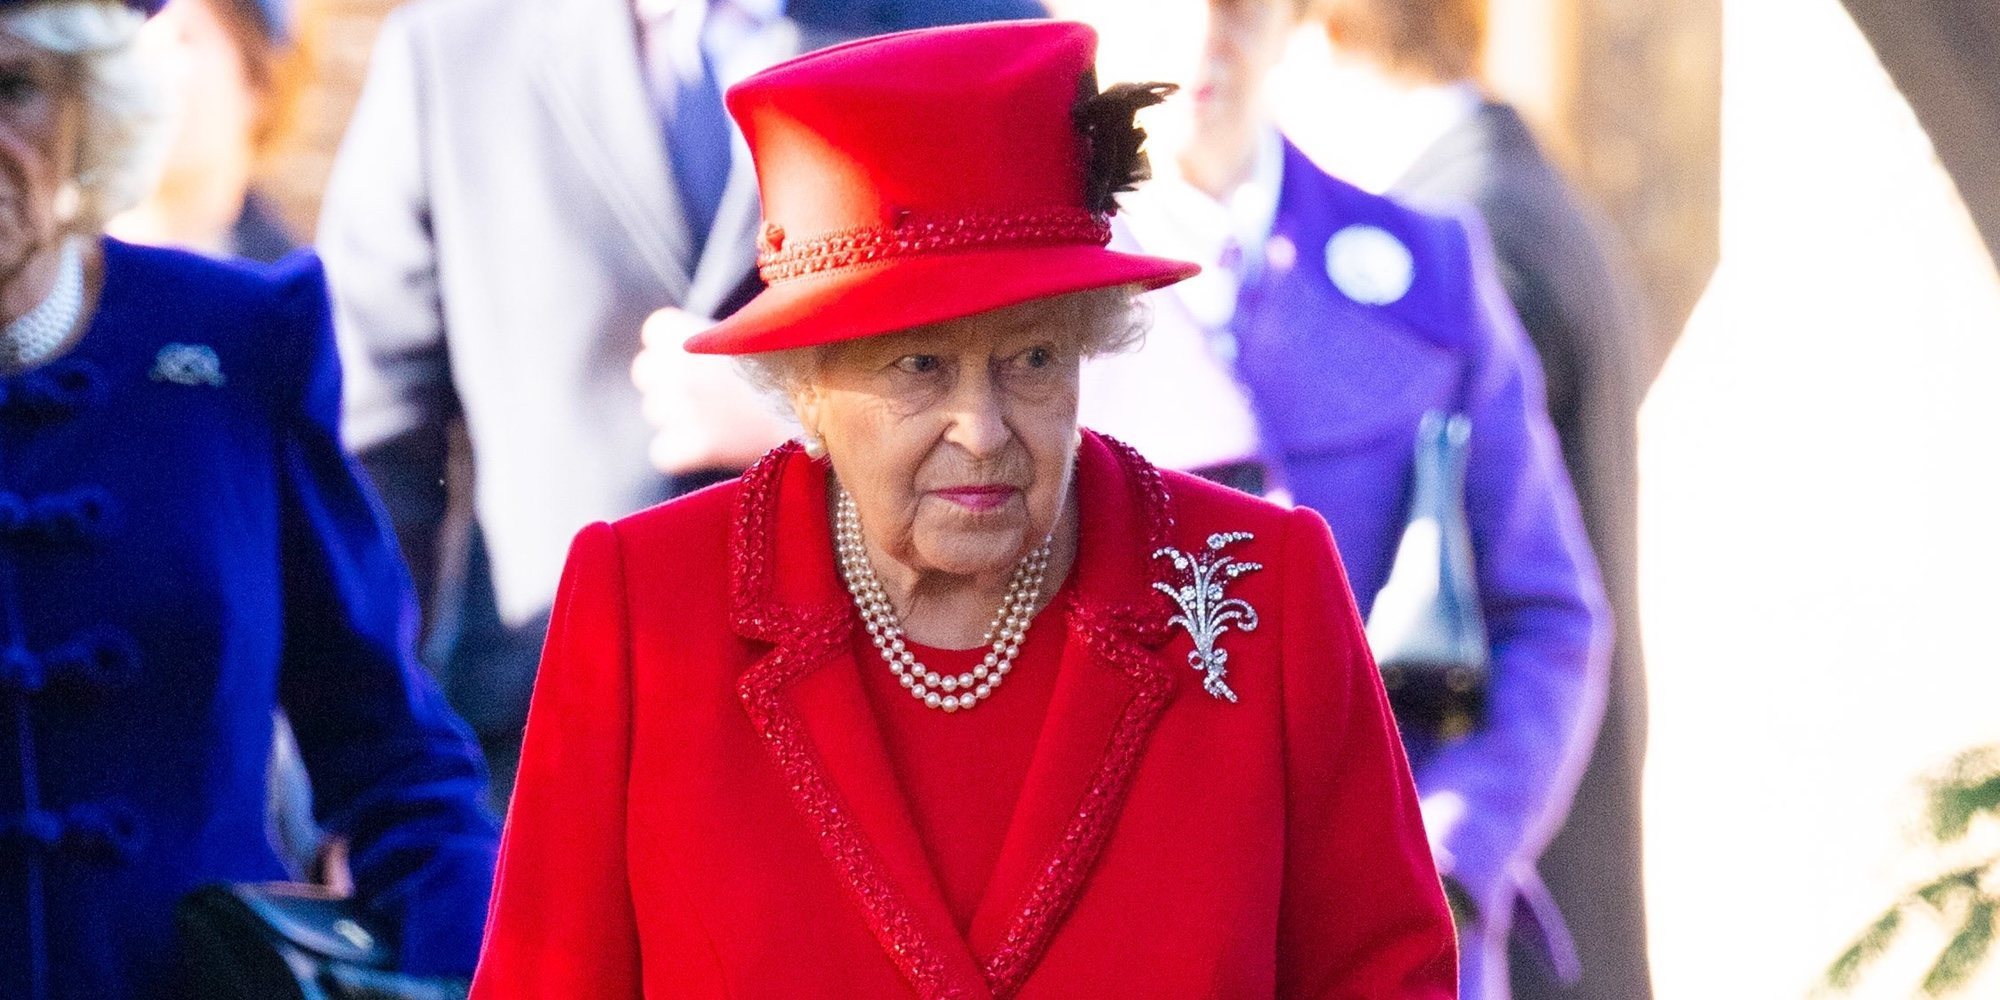 La Misa de Navidad 2019 de la Familia Real Británica, marcada por la ausencia de los Duques de Sussex